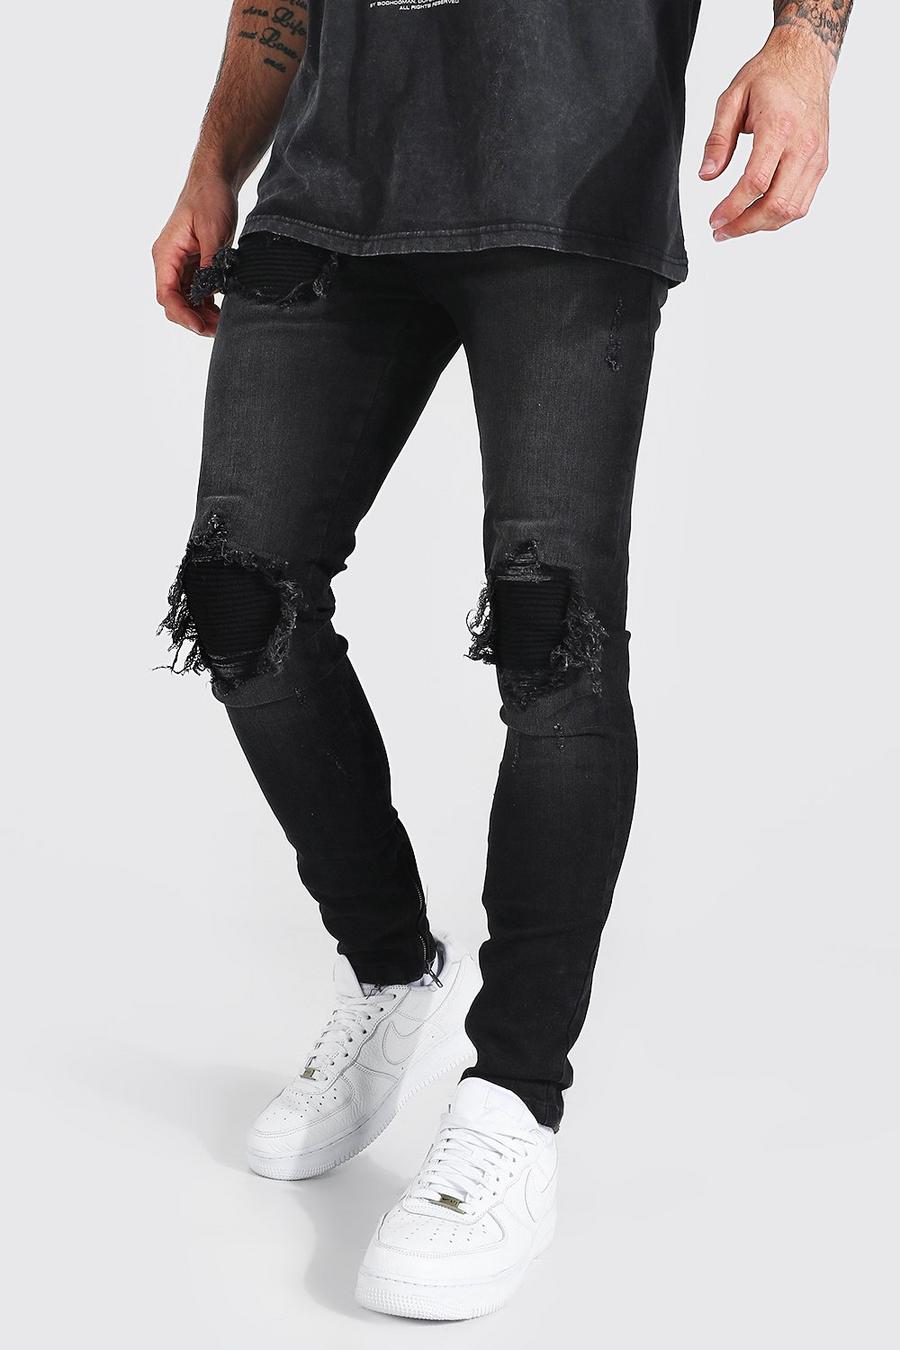 Jeans Skinny Fit Stretch stile Biker con strappi & rattoppi, Nero effetto lavato